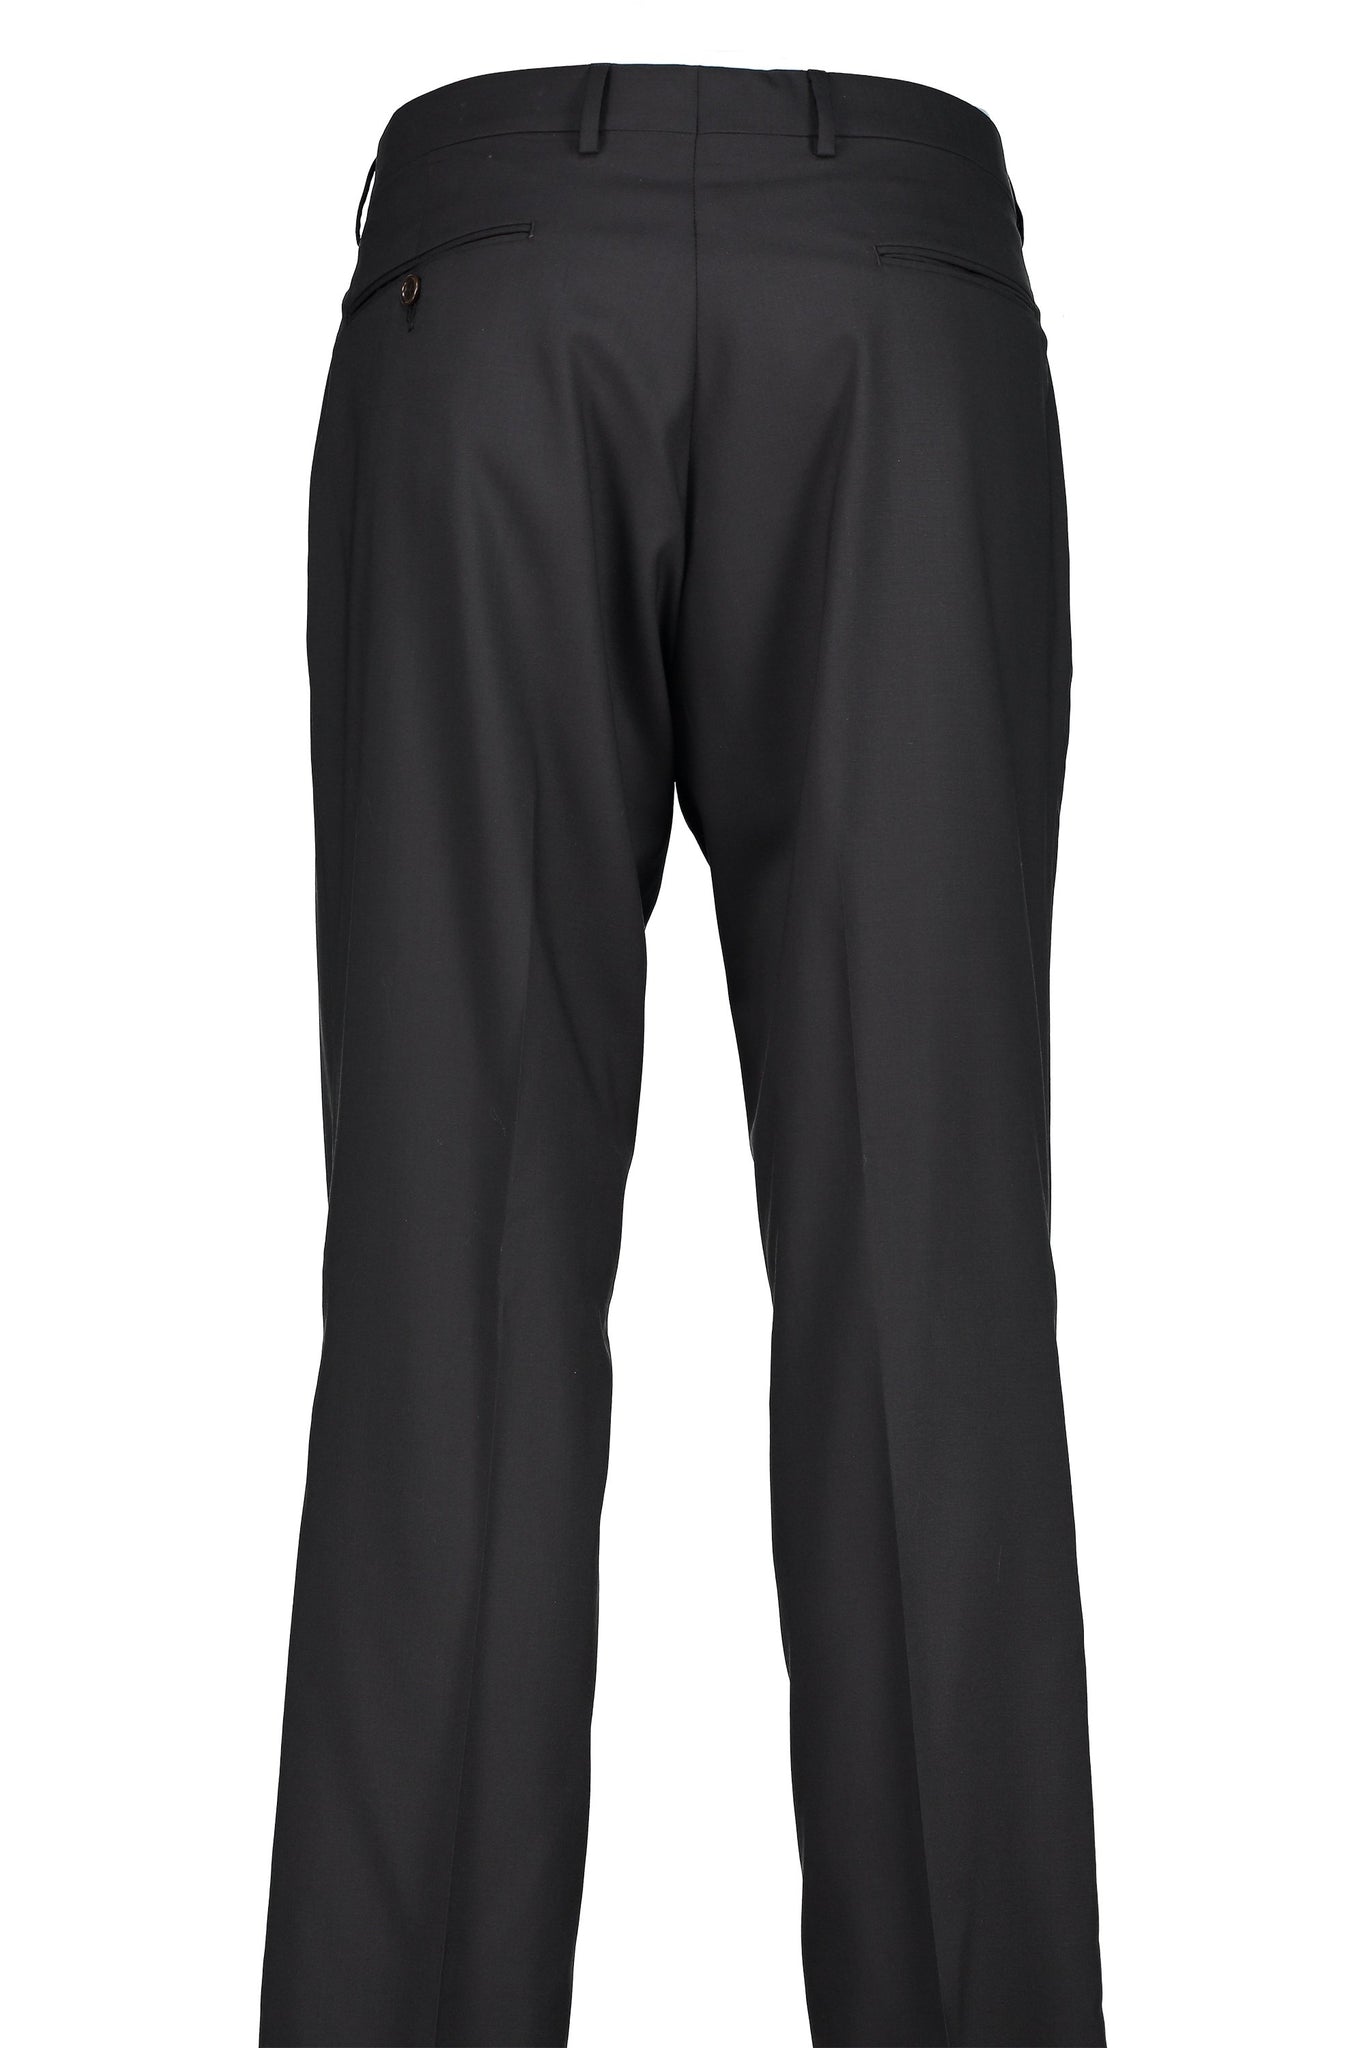 Classic Fit Black H-Tech Wool Suit Separate Flat Front Pants -  Hardwick.com